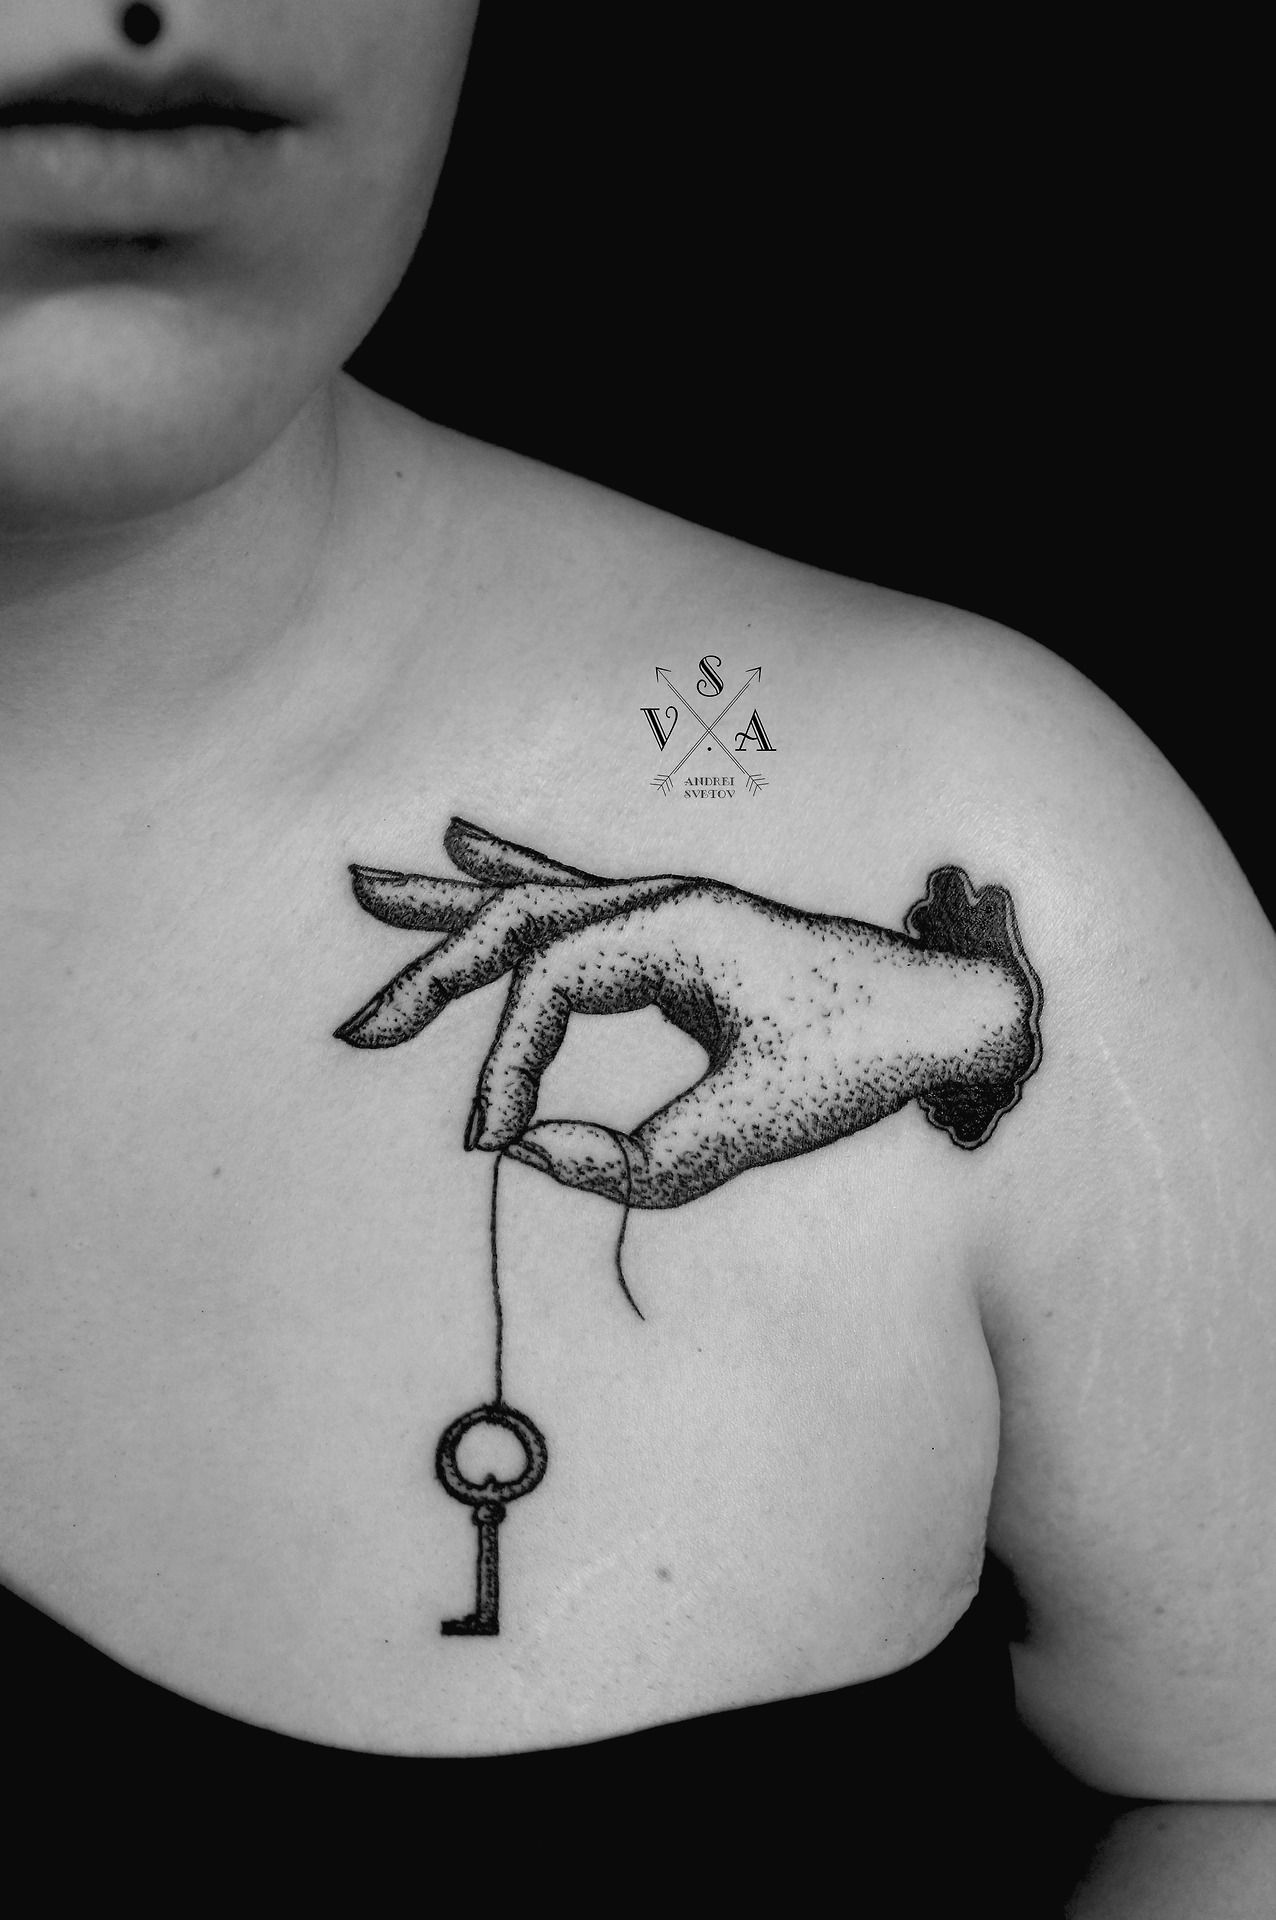 SV.A, tattoo, black and white photo, key, hand, sholder